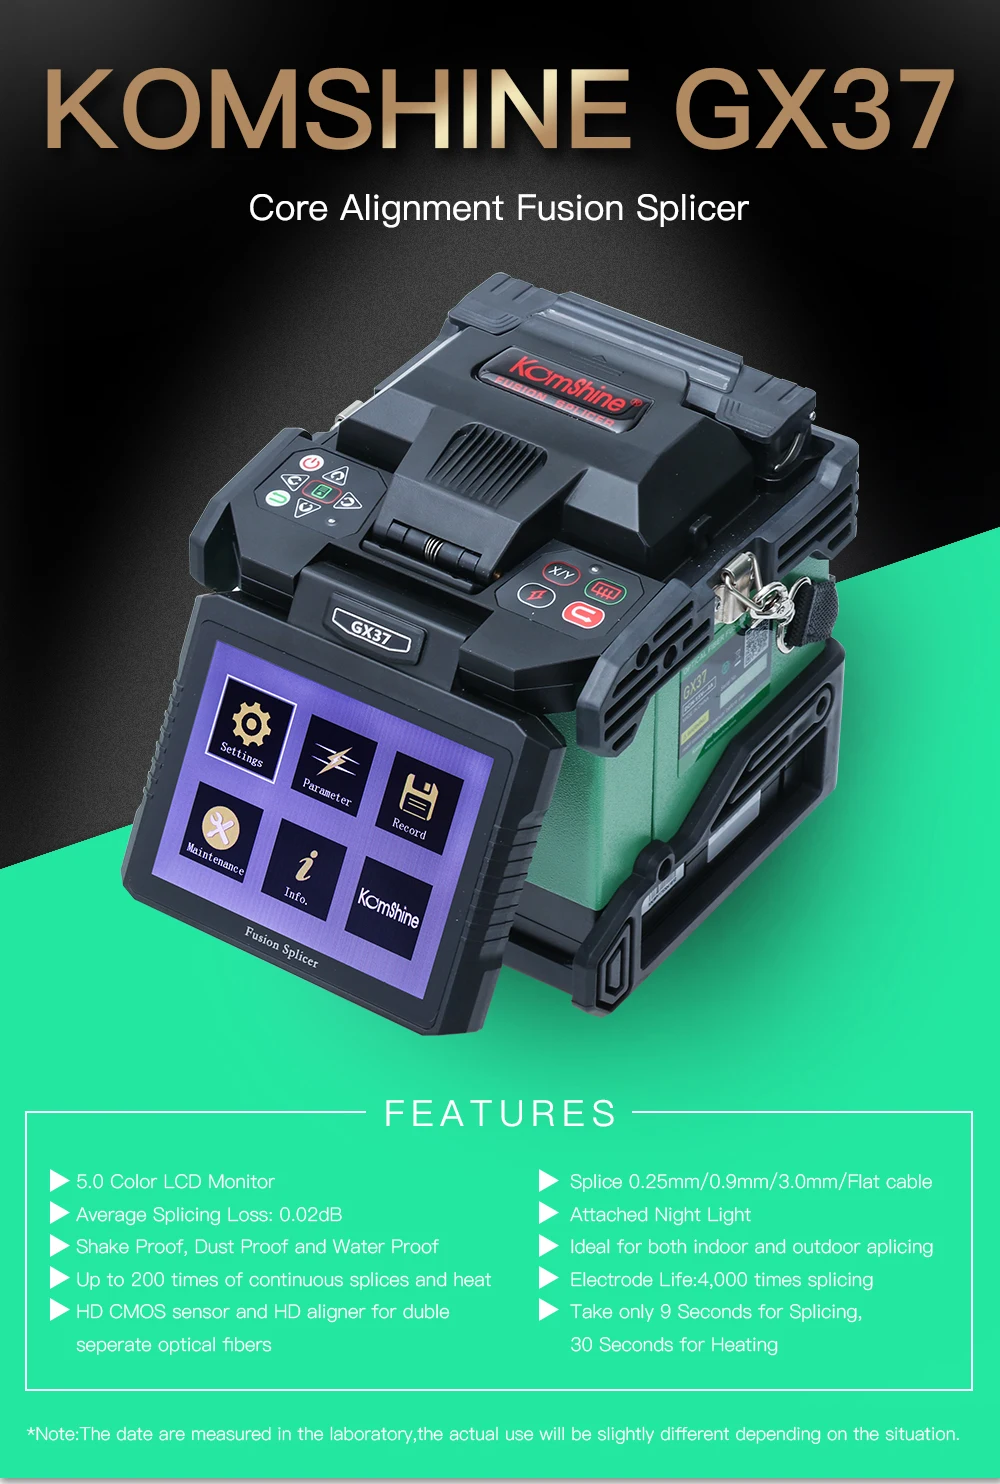 FTTH оптическая сплайсинговая машина Komshine GX37 производитель Сплайсер как Fujikura 70s Splicer, INNO оптоволоконный сварочный аппарат